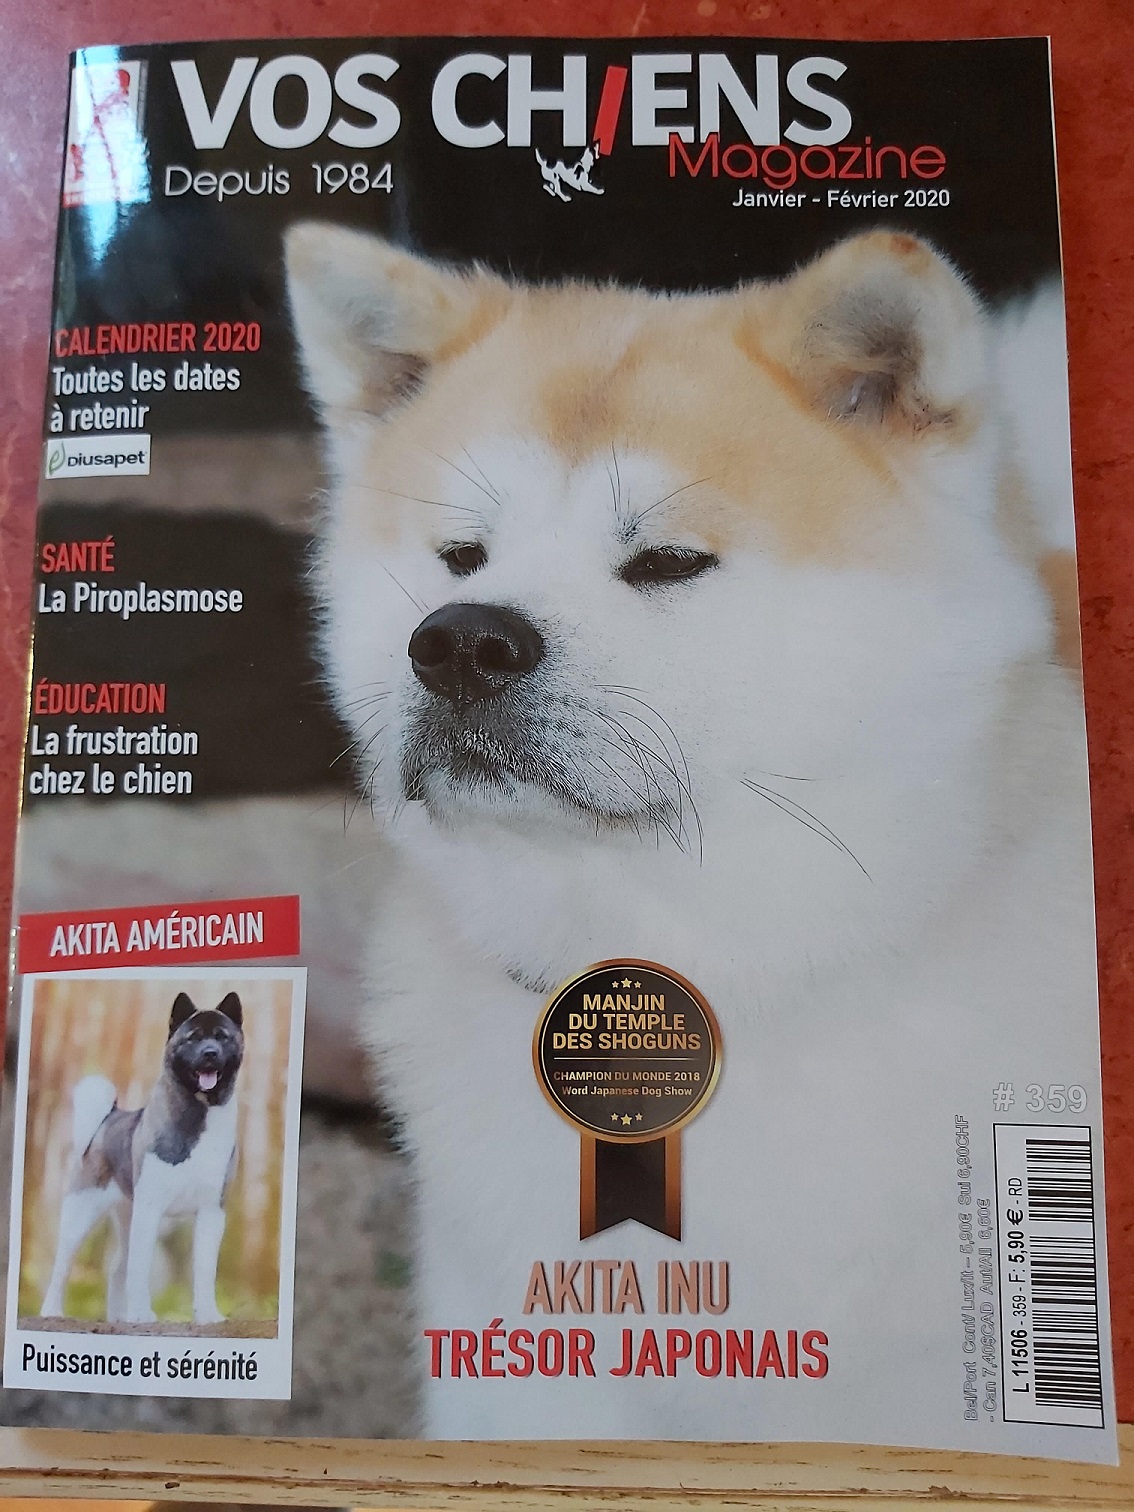 Manjin, de notre élevage Akita Inu, a fait la couverture de Vos Chiens magazine en janvier 2020.